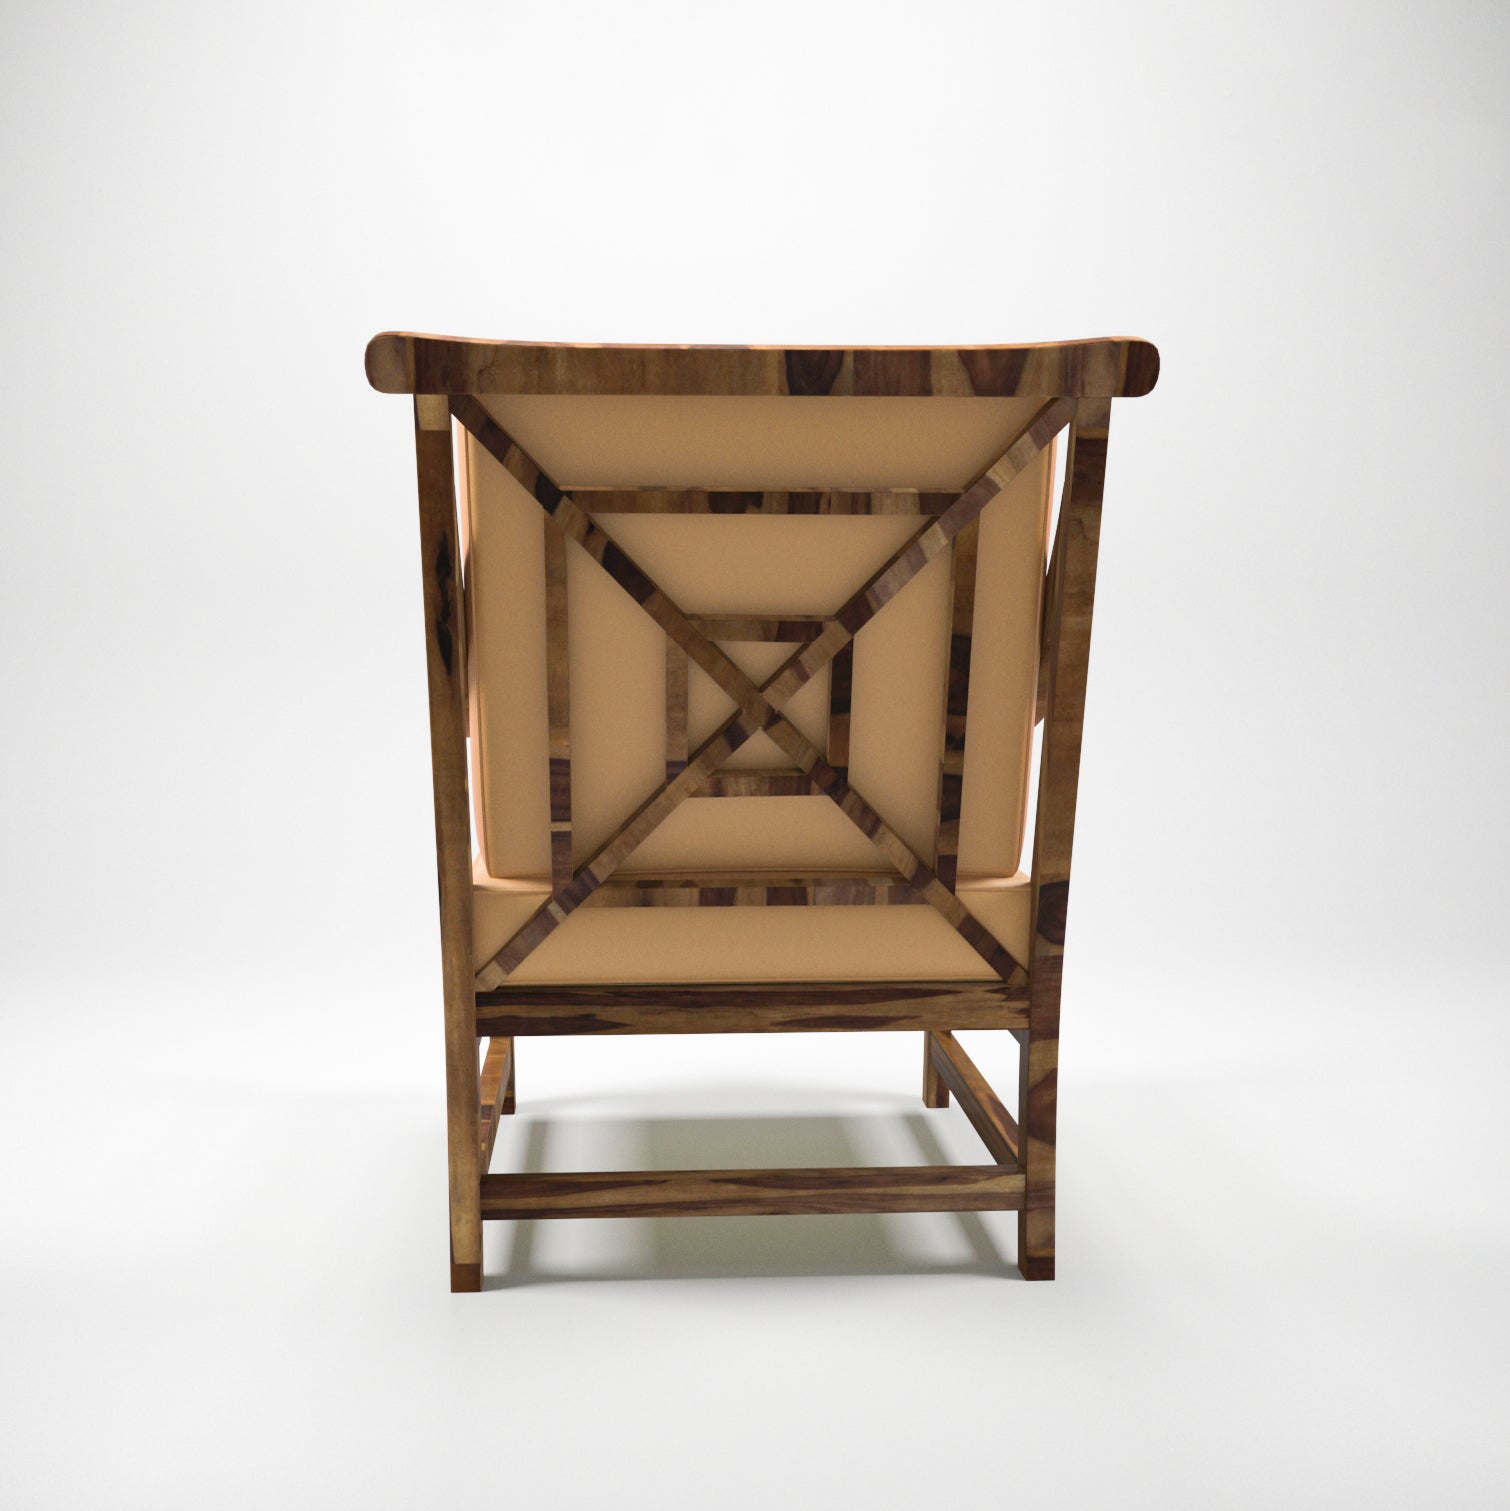 Sheesham wood spacious Sofa Style arm chair Arm Chair